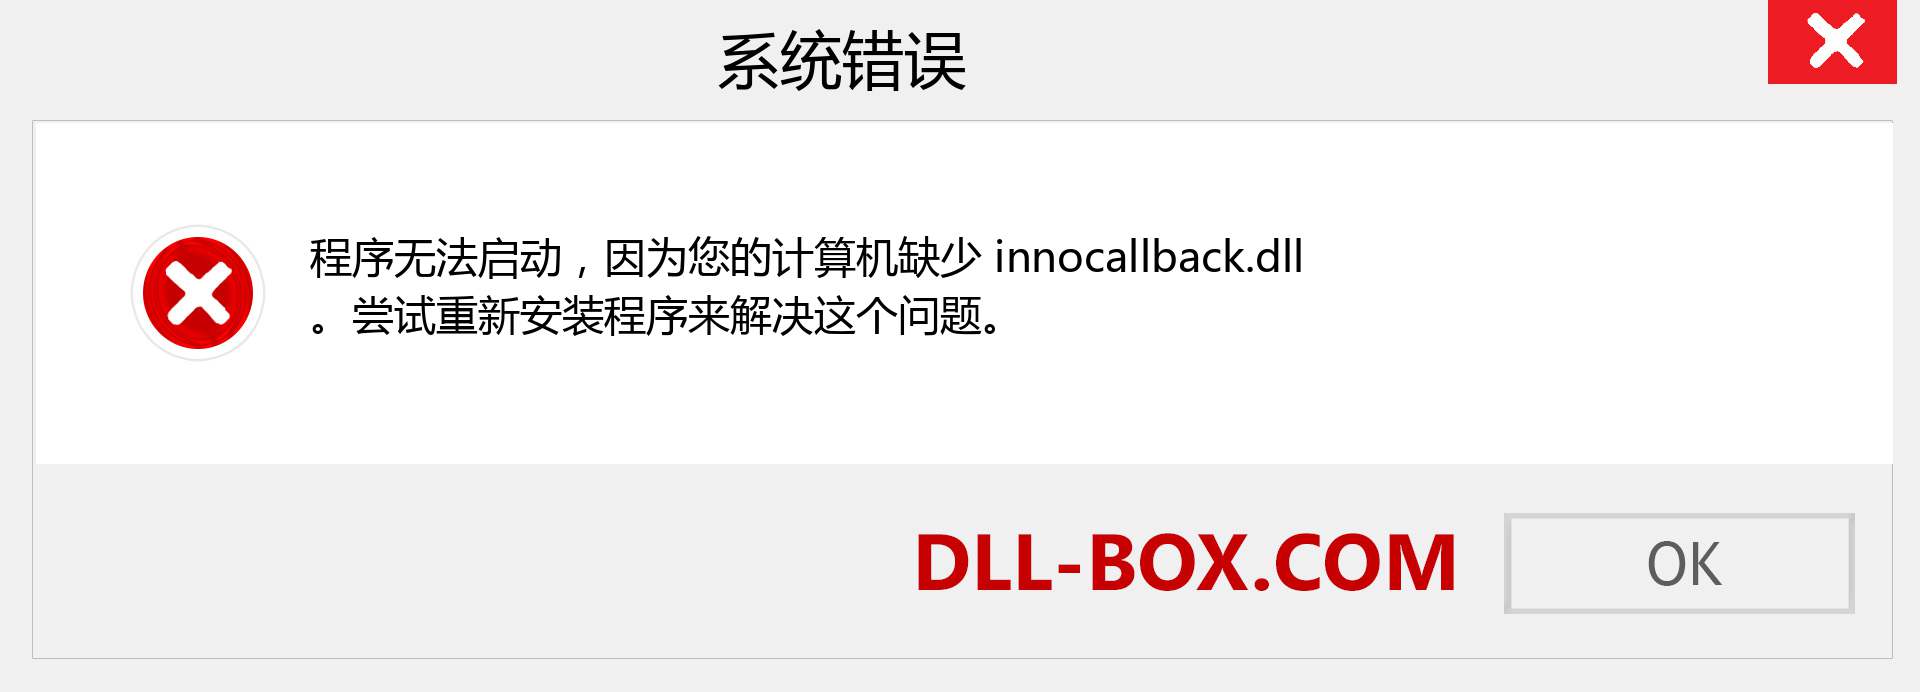 innocallback.dll 文件丢失？。 适用于 Windows 7、8、10 的下载 - 修复 Windows、照片、图像上的 innocallback dll 丢失错误